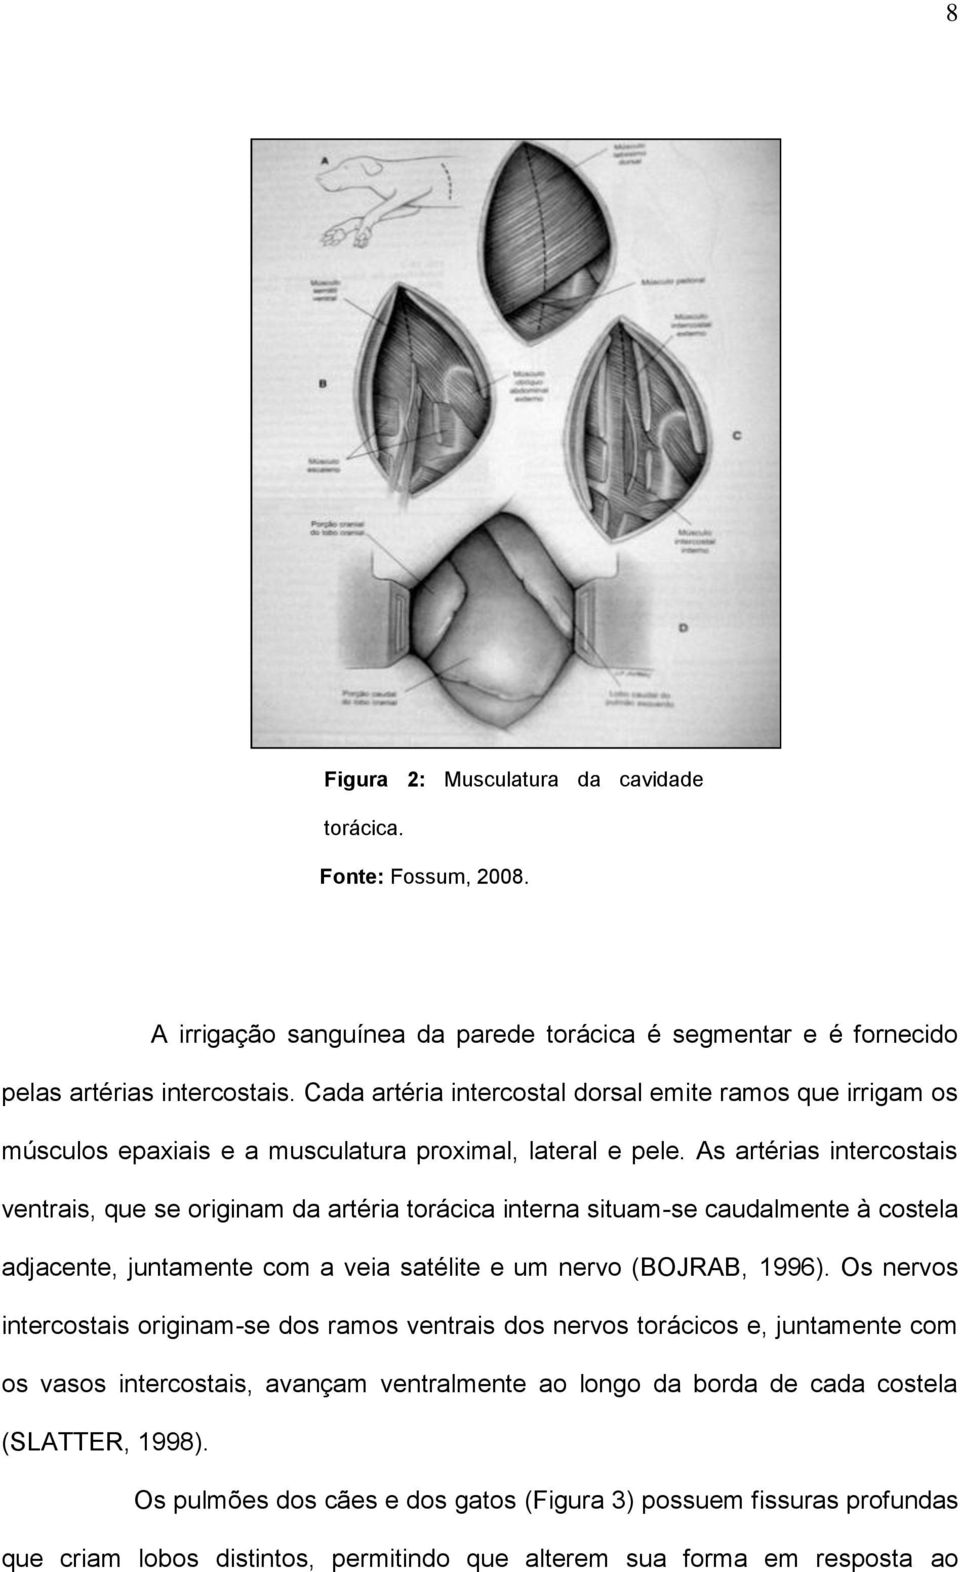 As artérias intercostais ventrais, que se originam da artéria torácica interna situam-se caudalmente à costela adjacente, juntamente com a veia satélite e um nervo (BOJRAB, 1996).